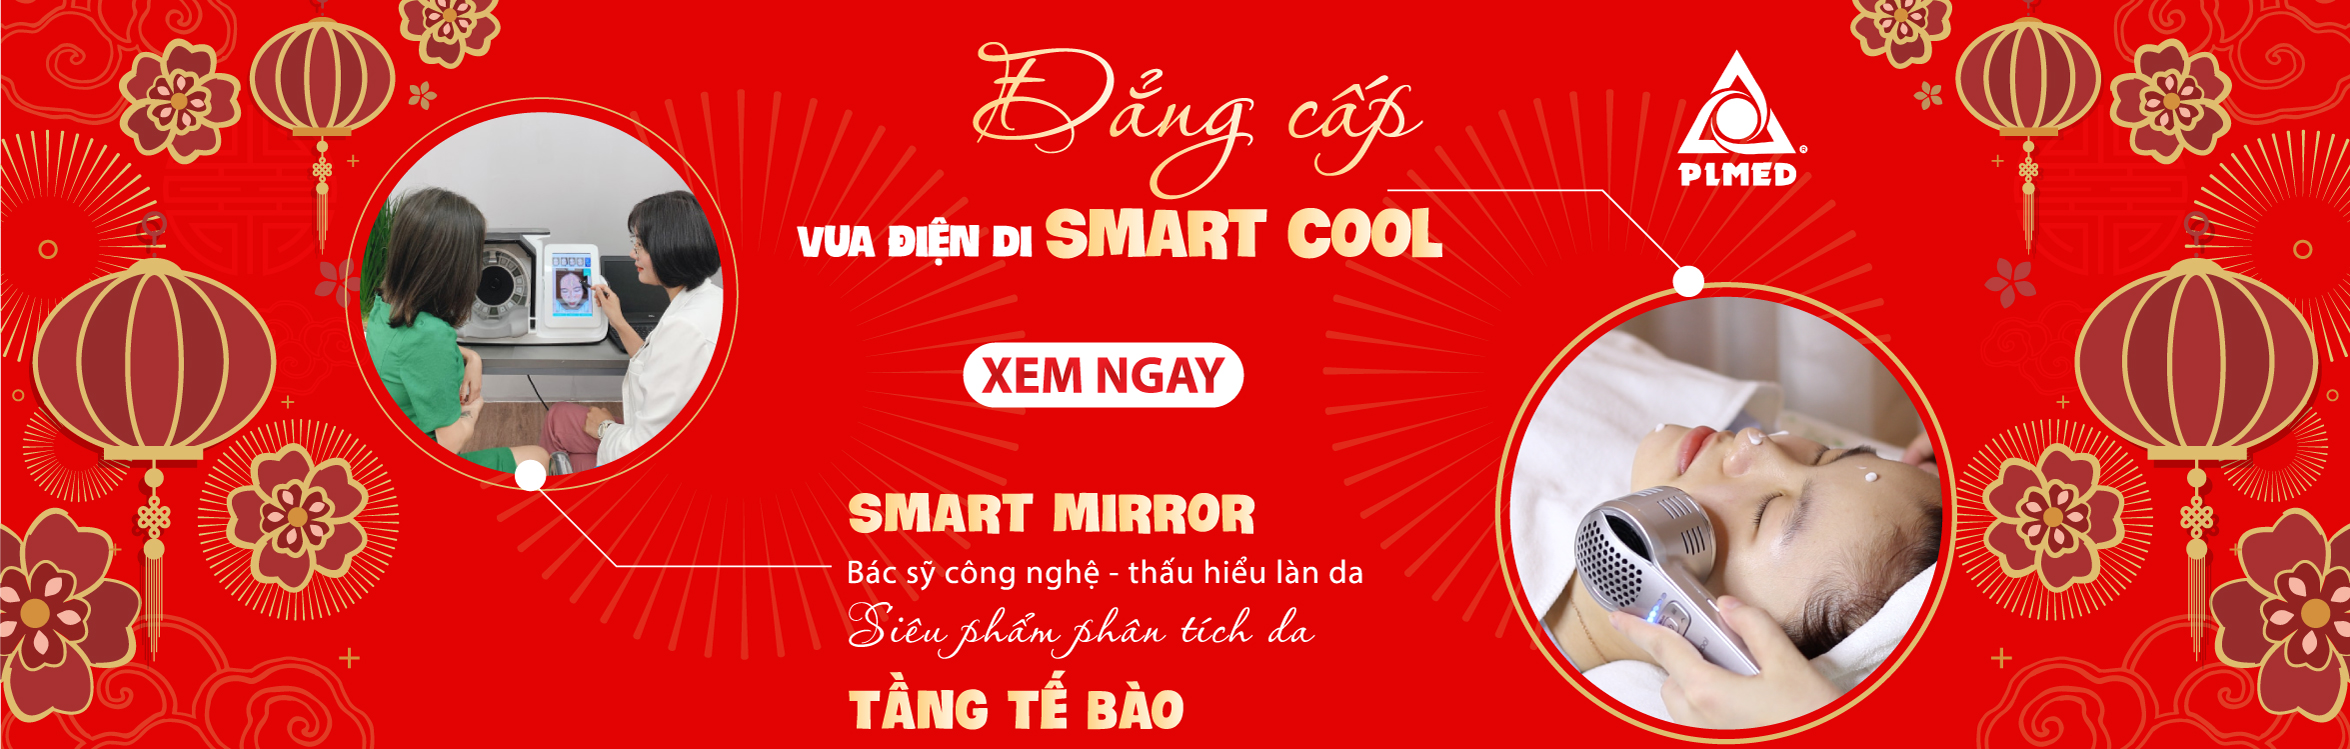 Thiết bị thẩm mỹ điện di Smart Mirror